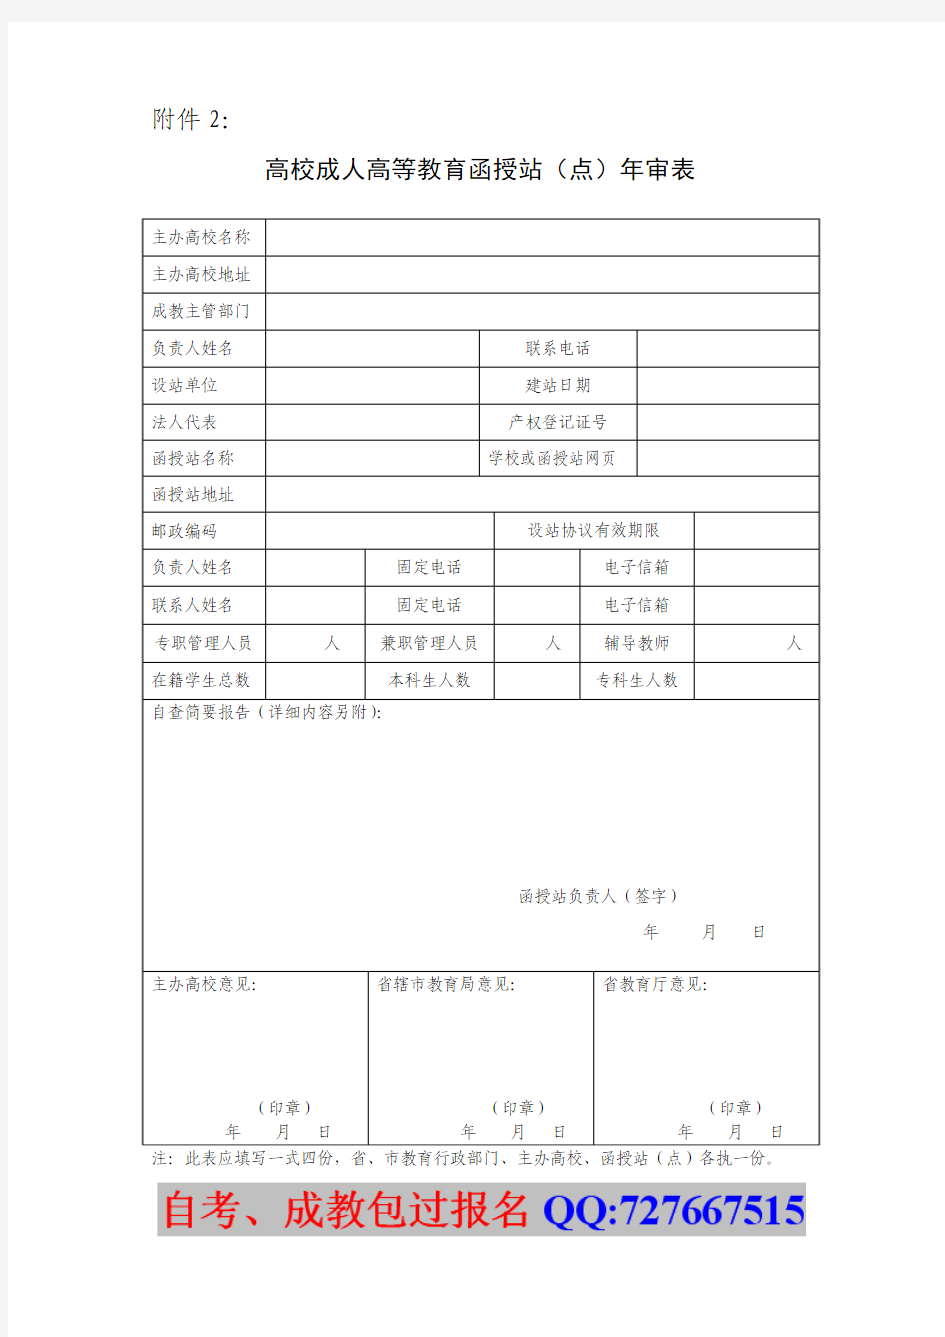 山东省高等学校函授站(校外学习中心)年审备案登记表